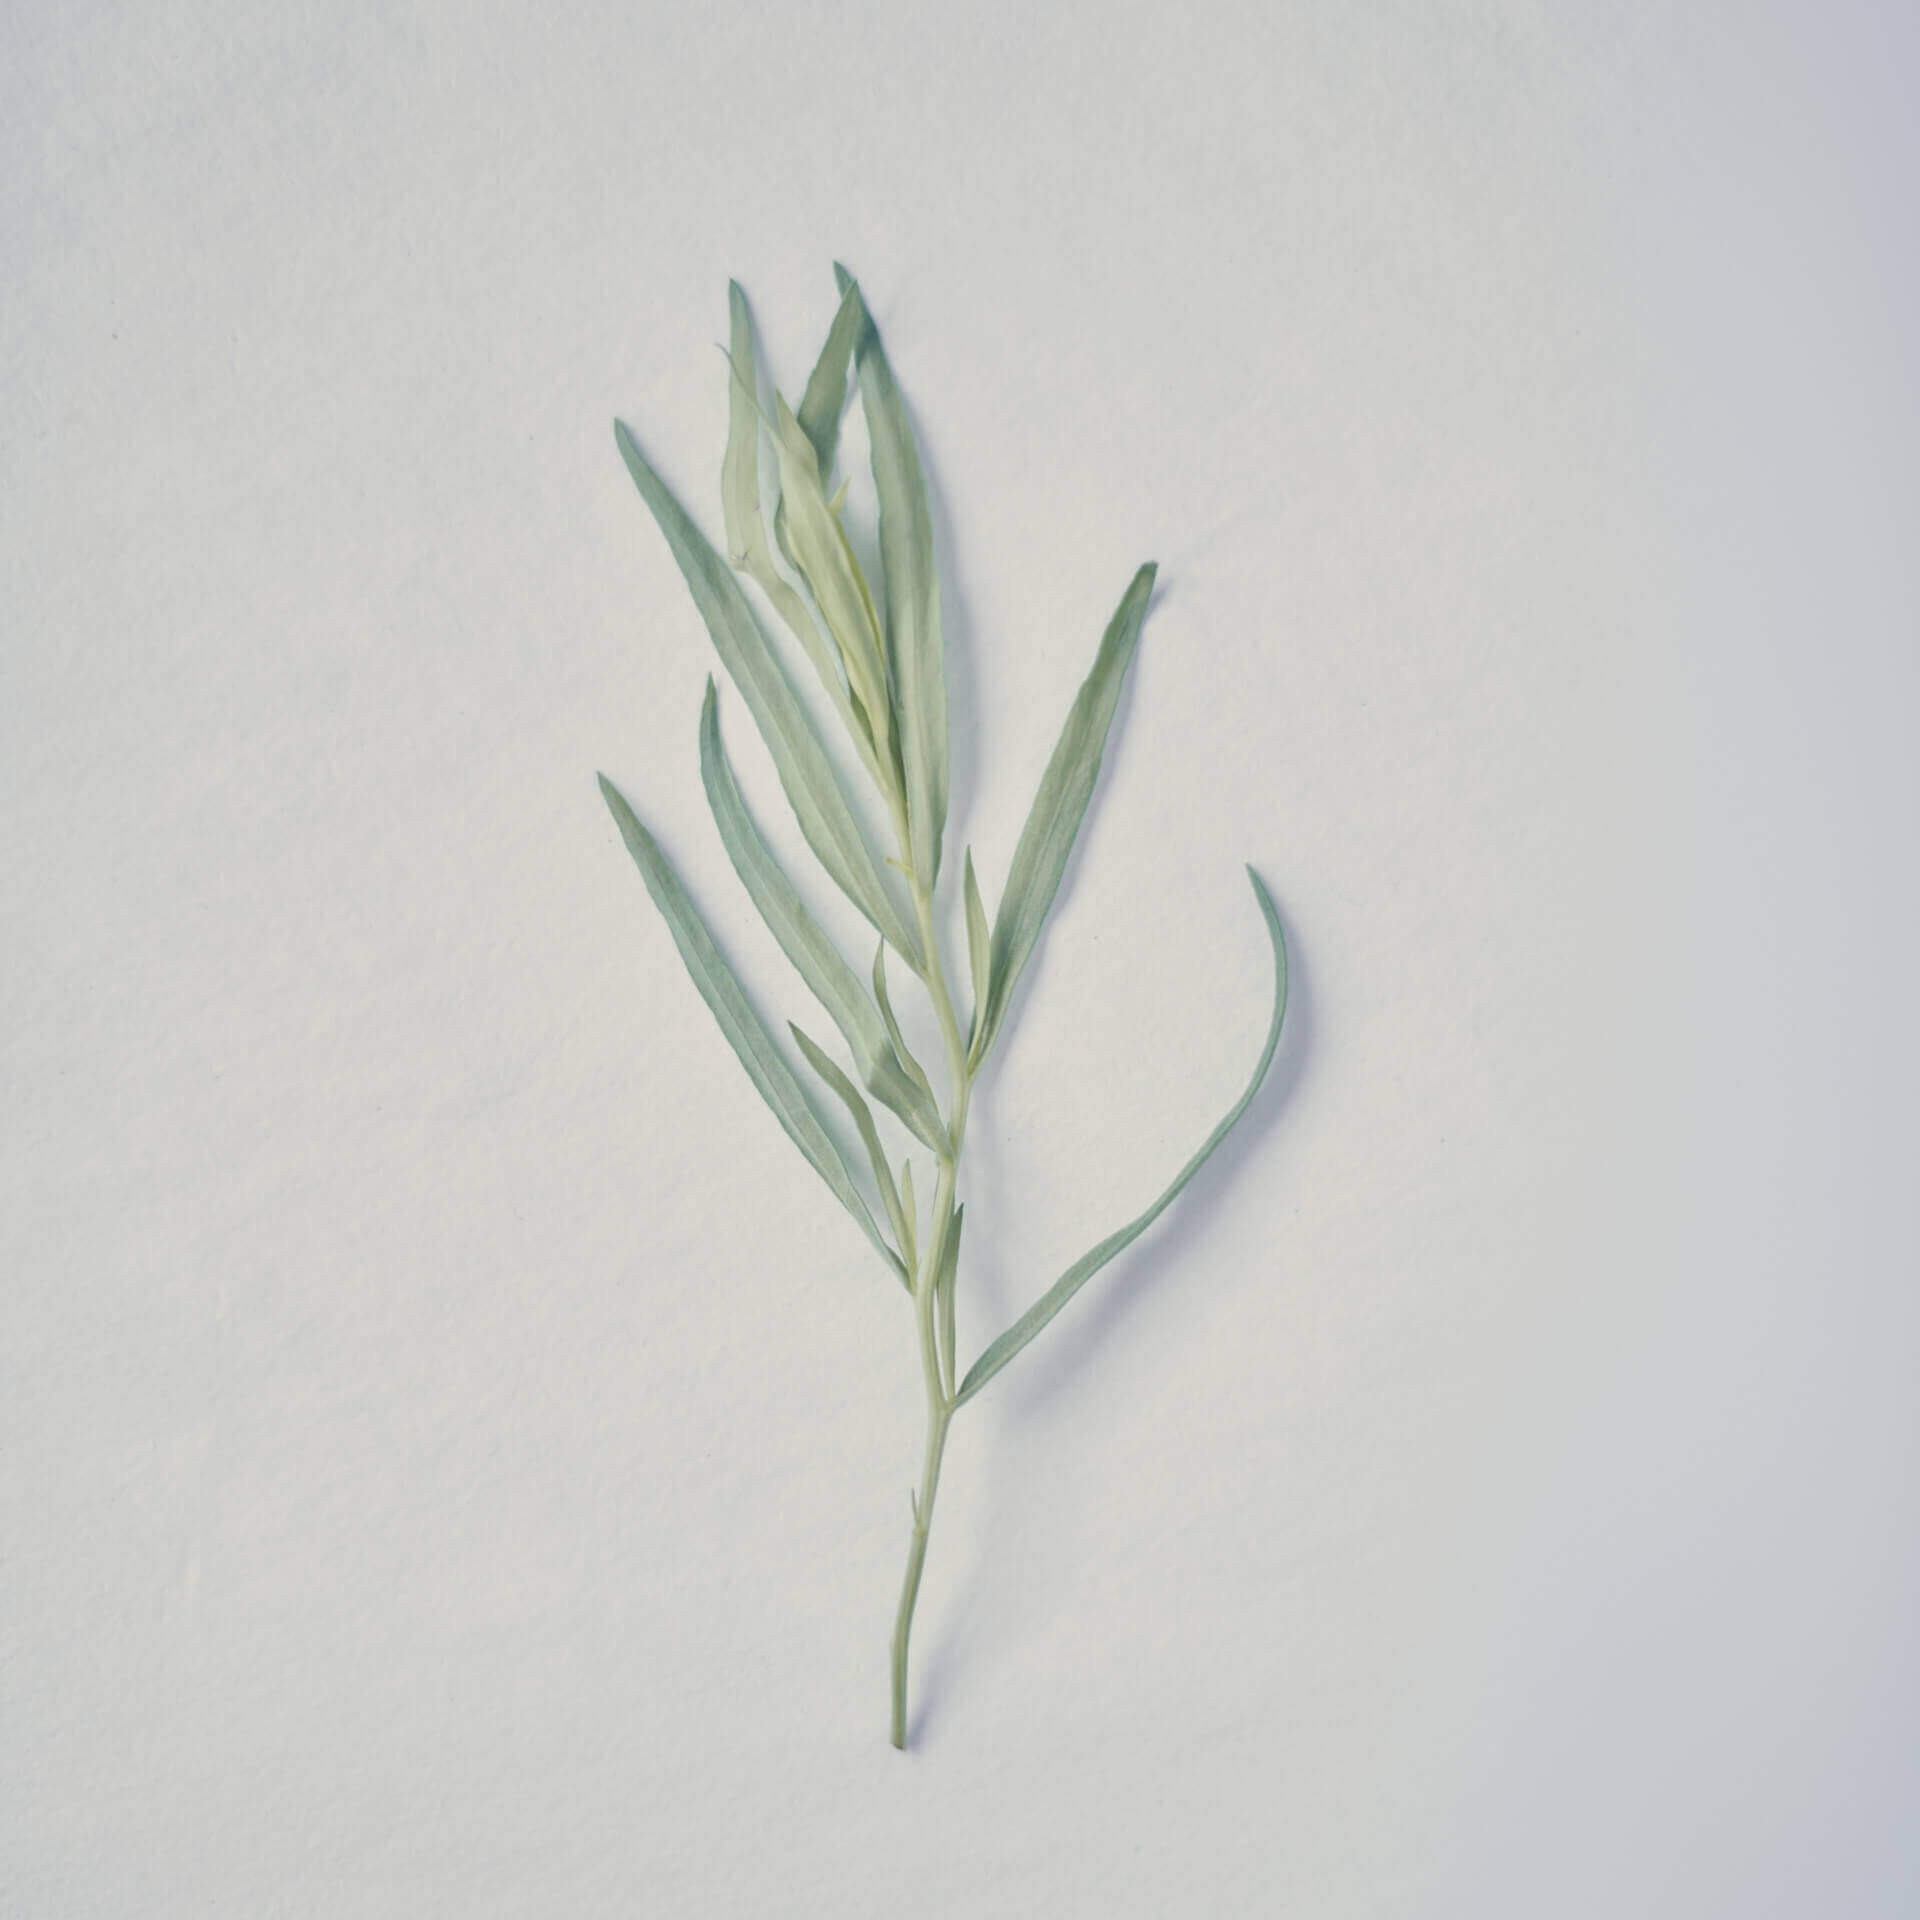 Organic Tarragon leaf, Ffern perfumery ingredient